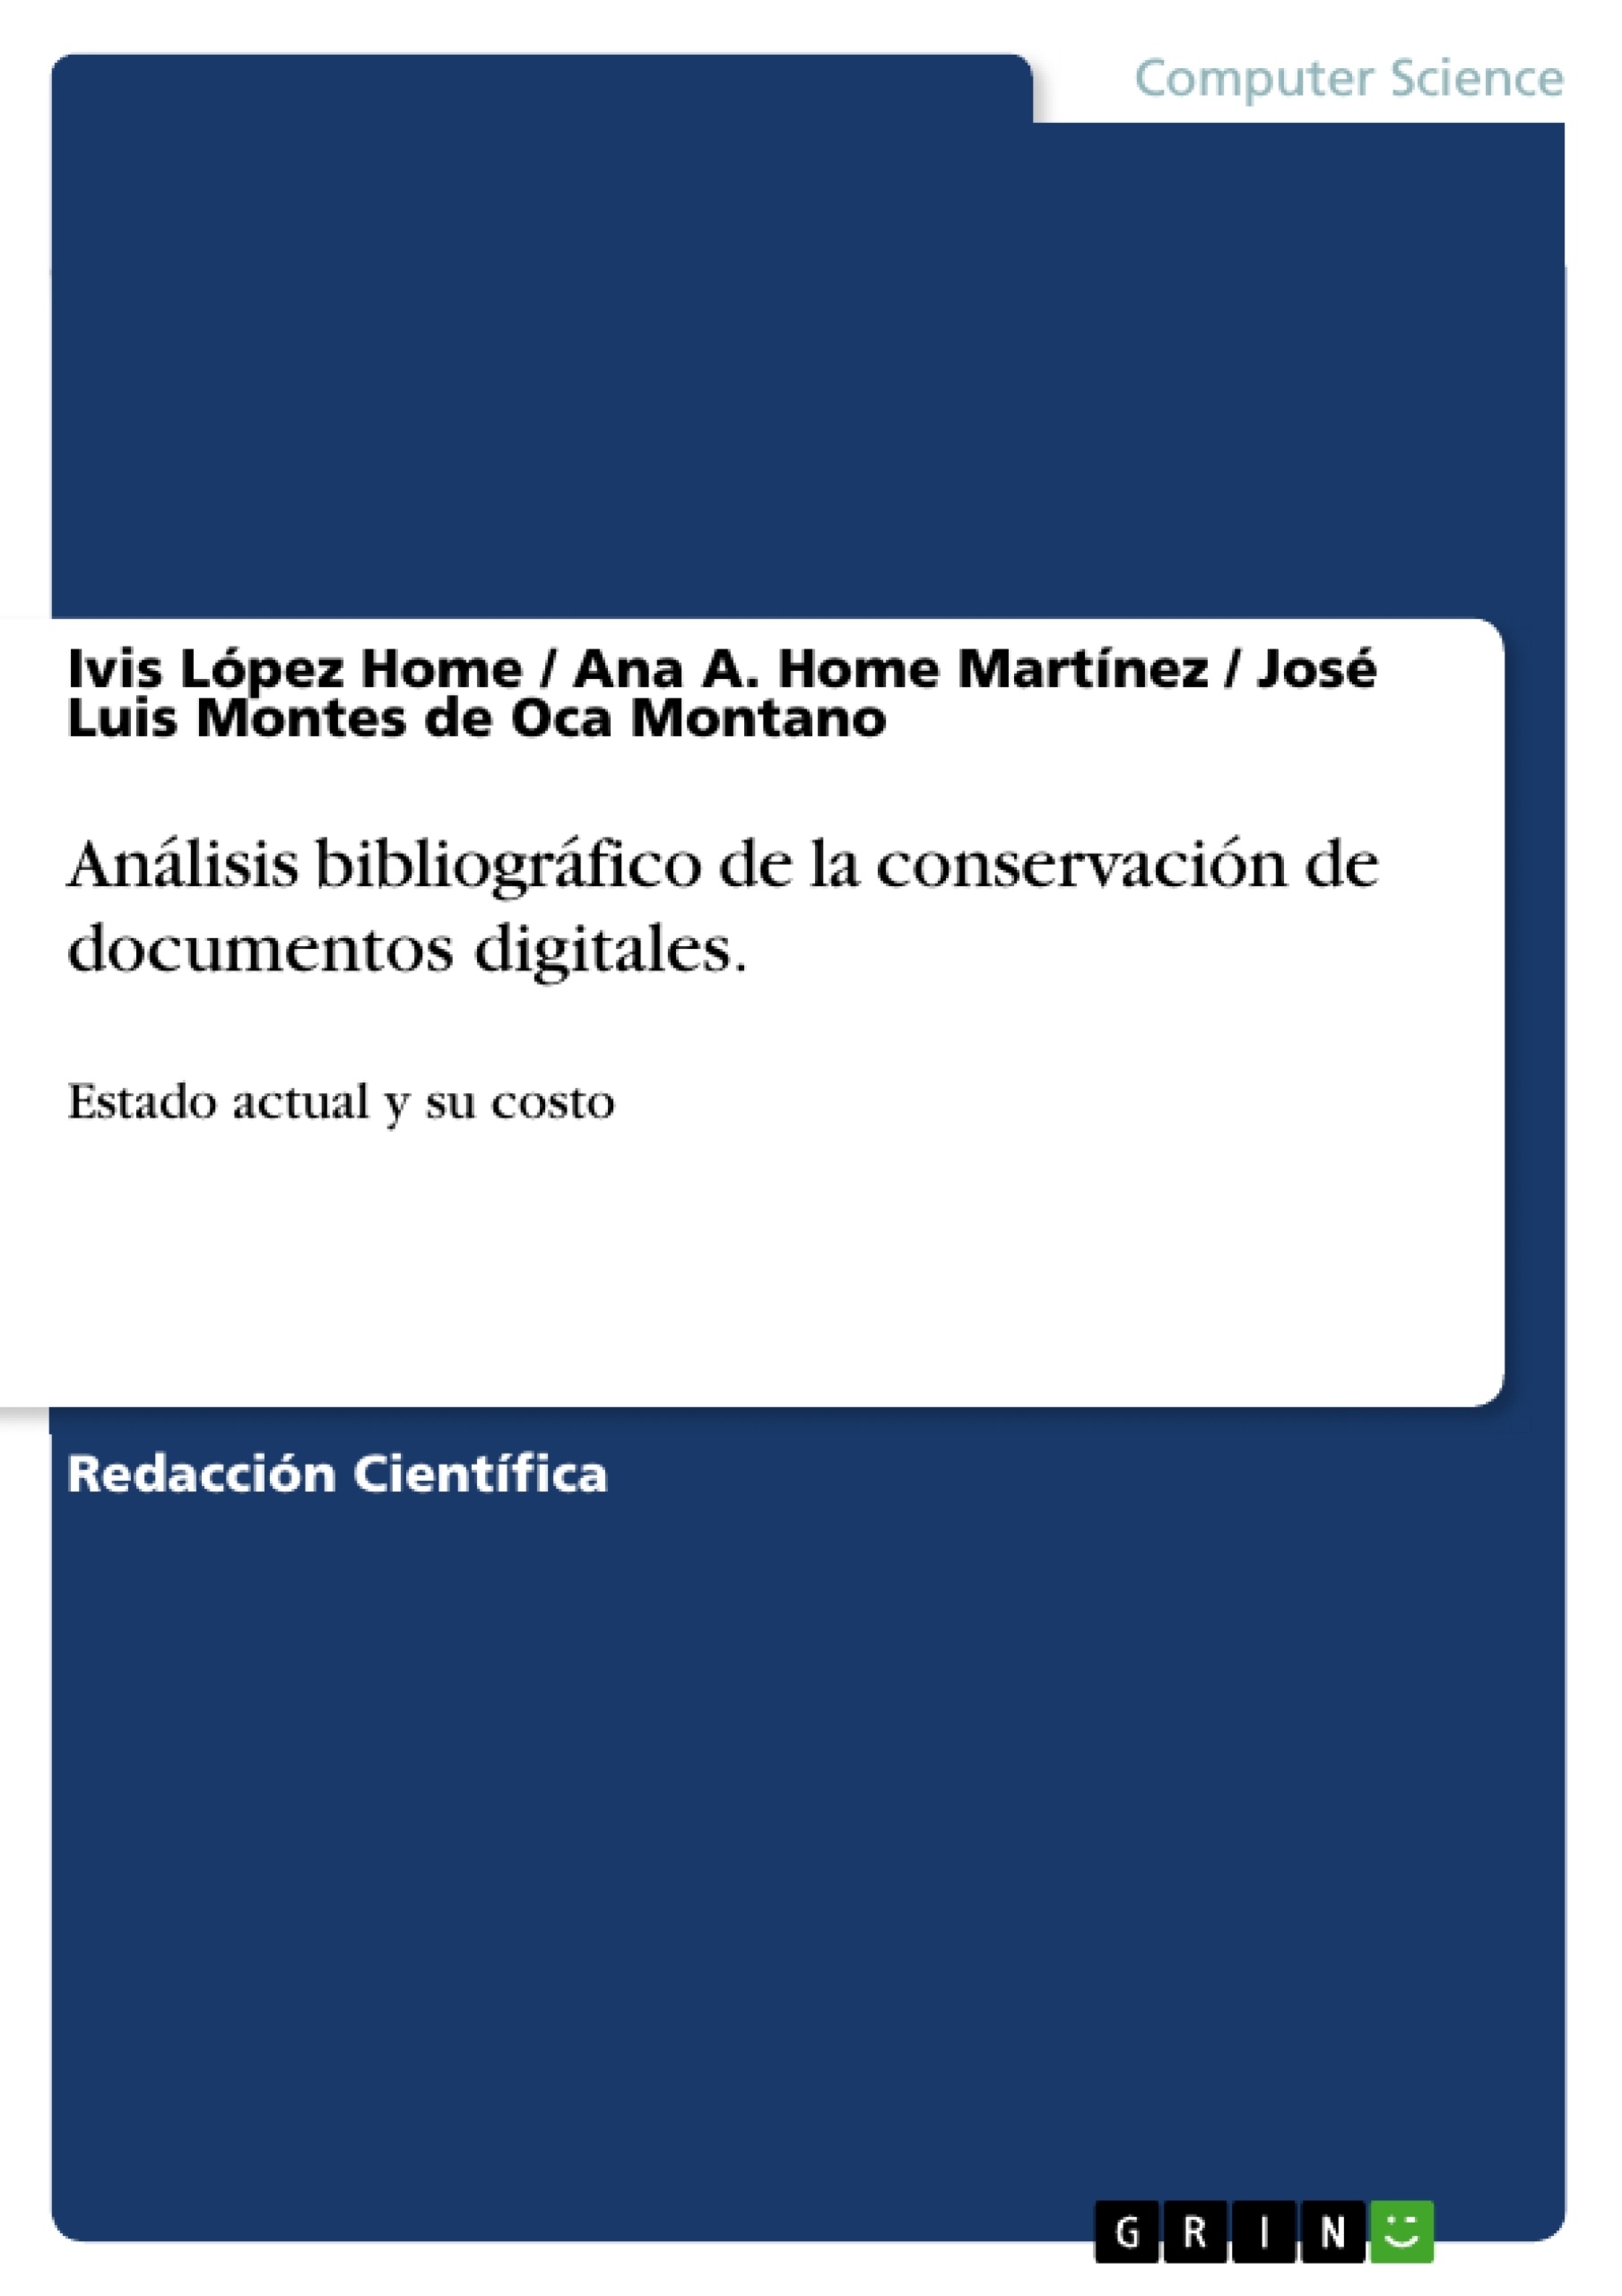 Título: Análisis bibliográfico de la conservación de documentos digitales.